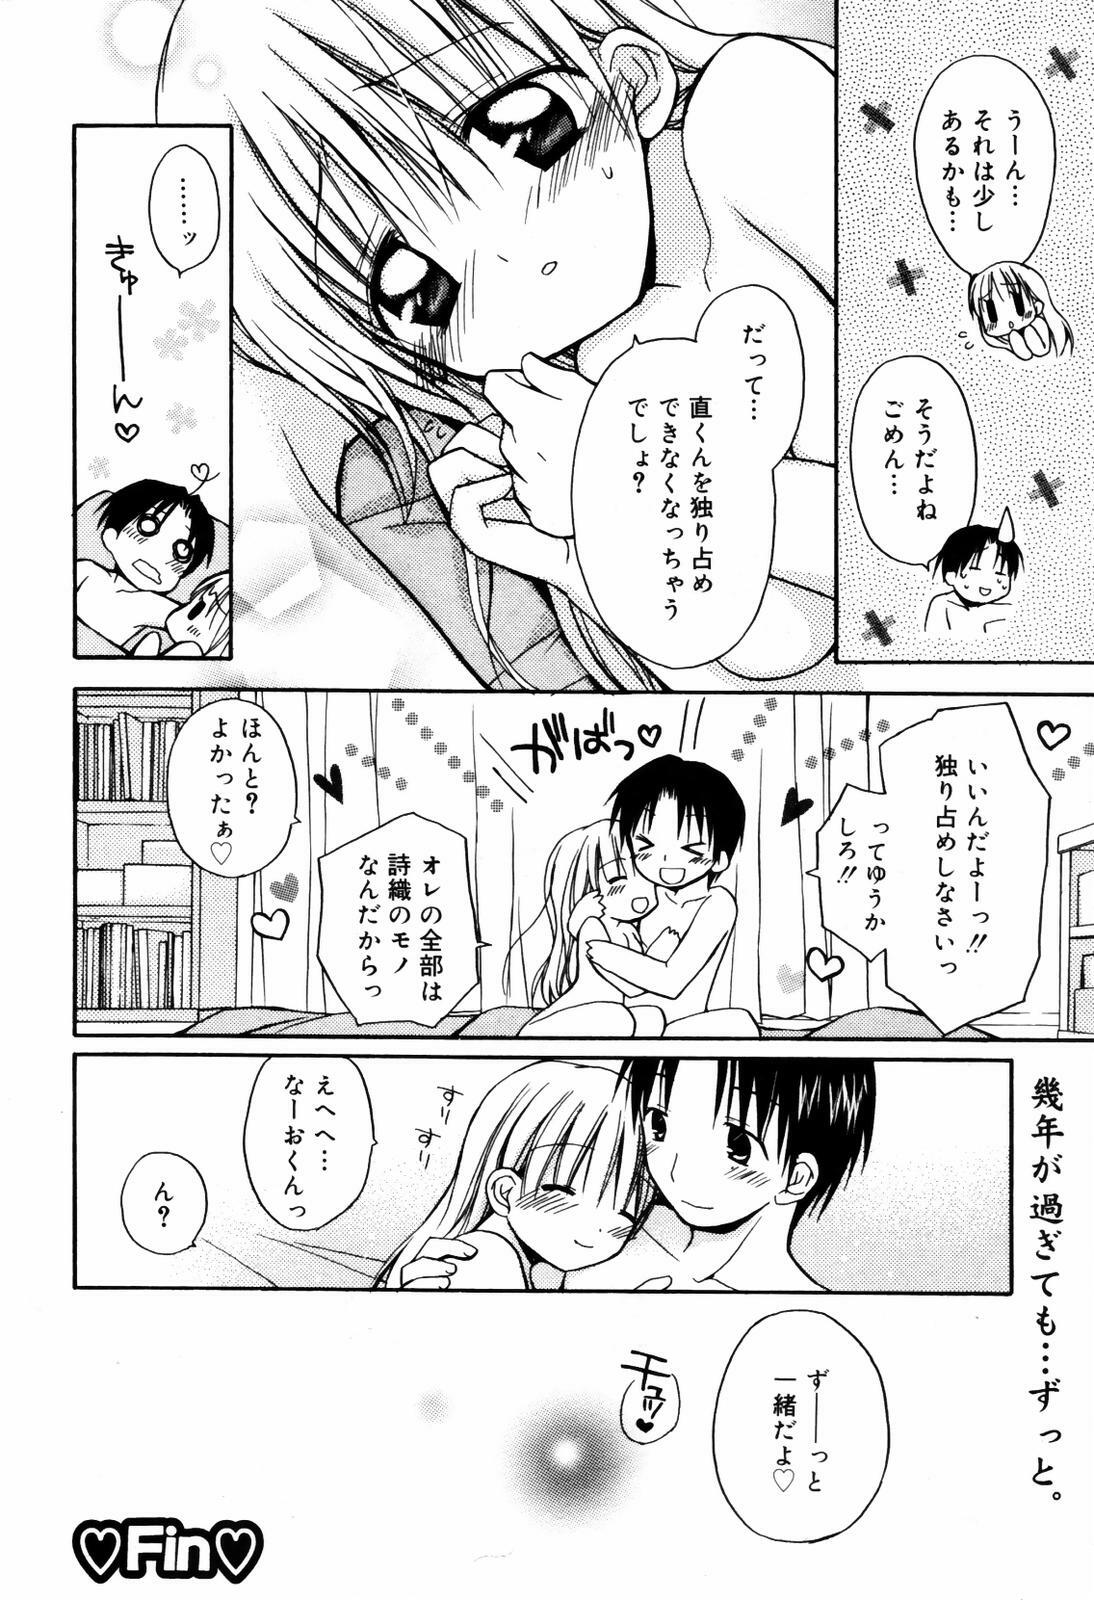 Manga Bangaichi 2007-09 page 20 full